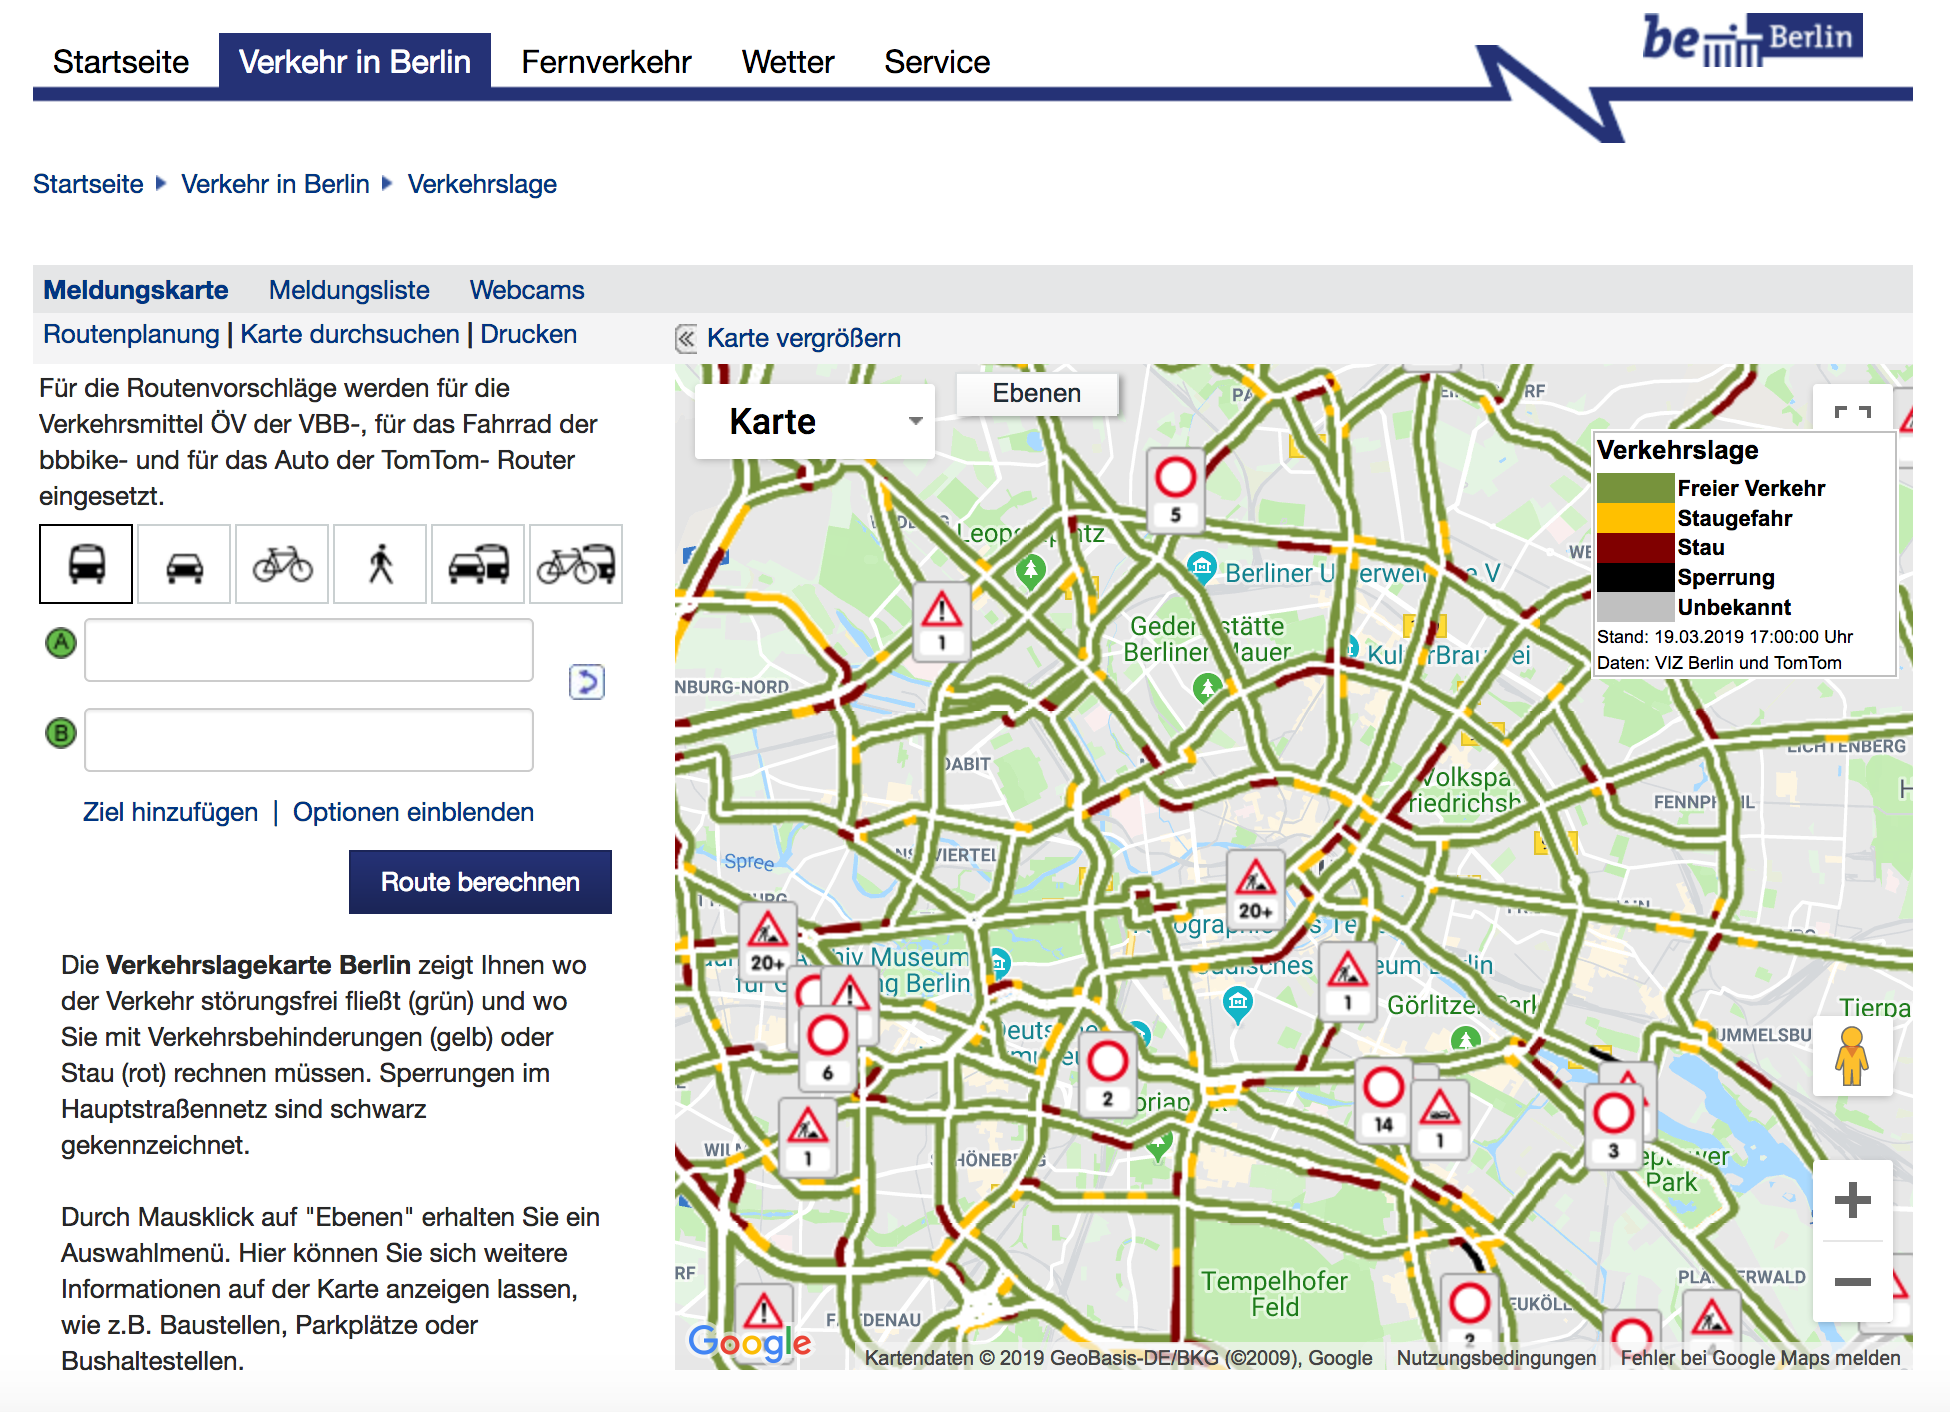 Aktuelle Verkehrsmeldungen in Berlin von der VIZ